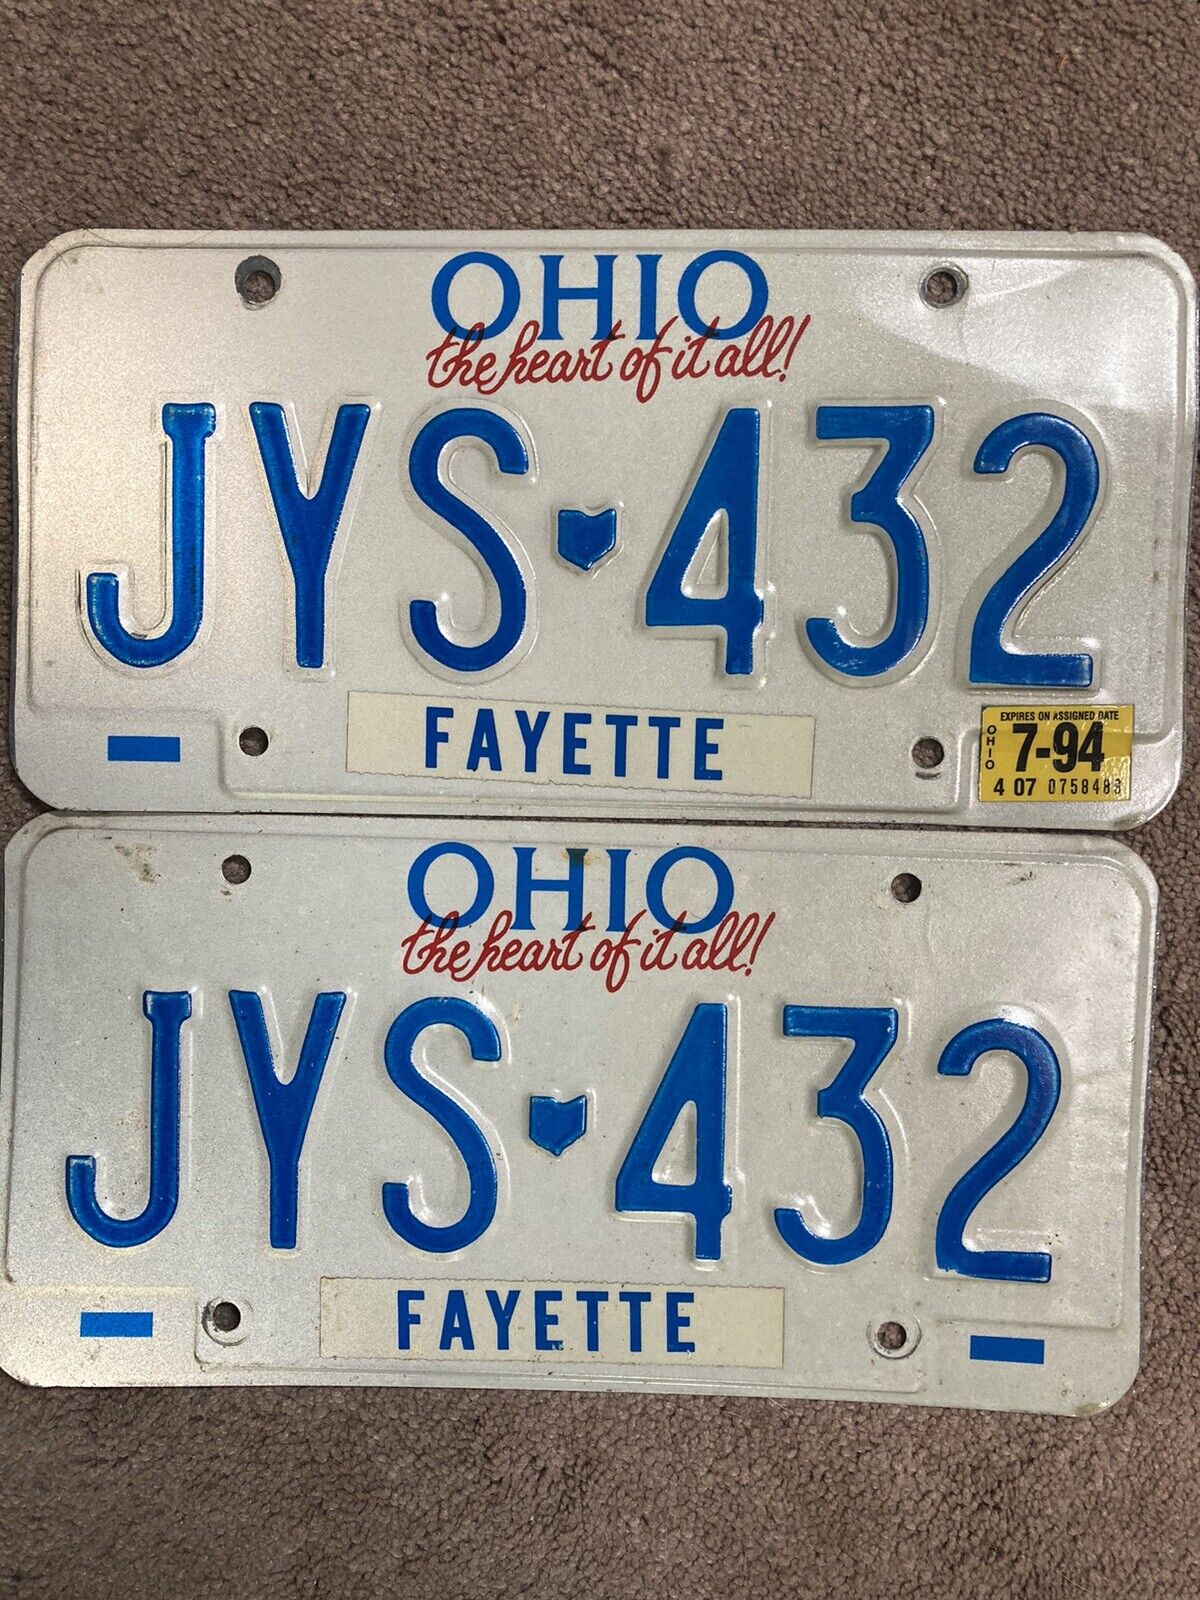 Pair of 1994 Ohio License Plates - JYS 432  - Nice